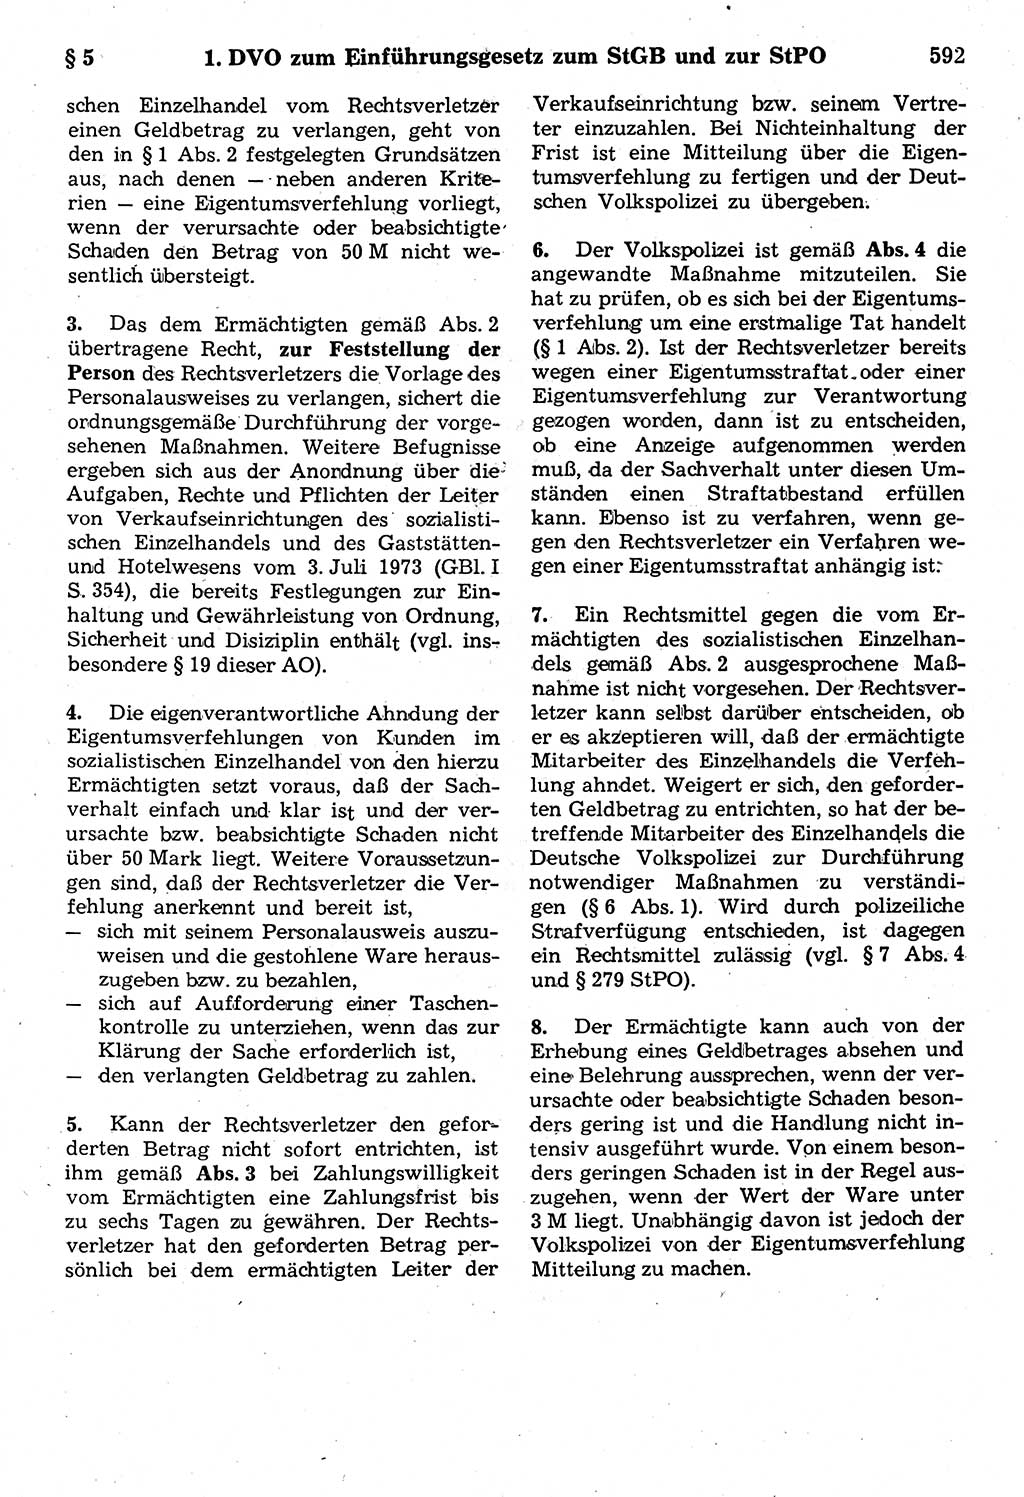 Strafrecht der Deutschen Demokratischen Republik (DDR), Kommentar zum Strafgesetzbuch (StGB) 1987, Seite 592 (Strafr. DDR Komm. StGB 1987, S. 592)